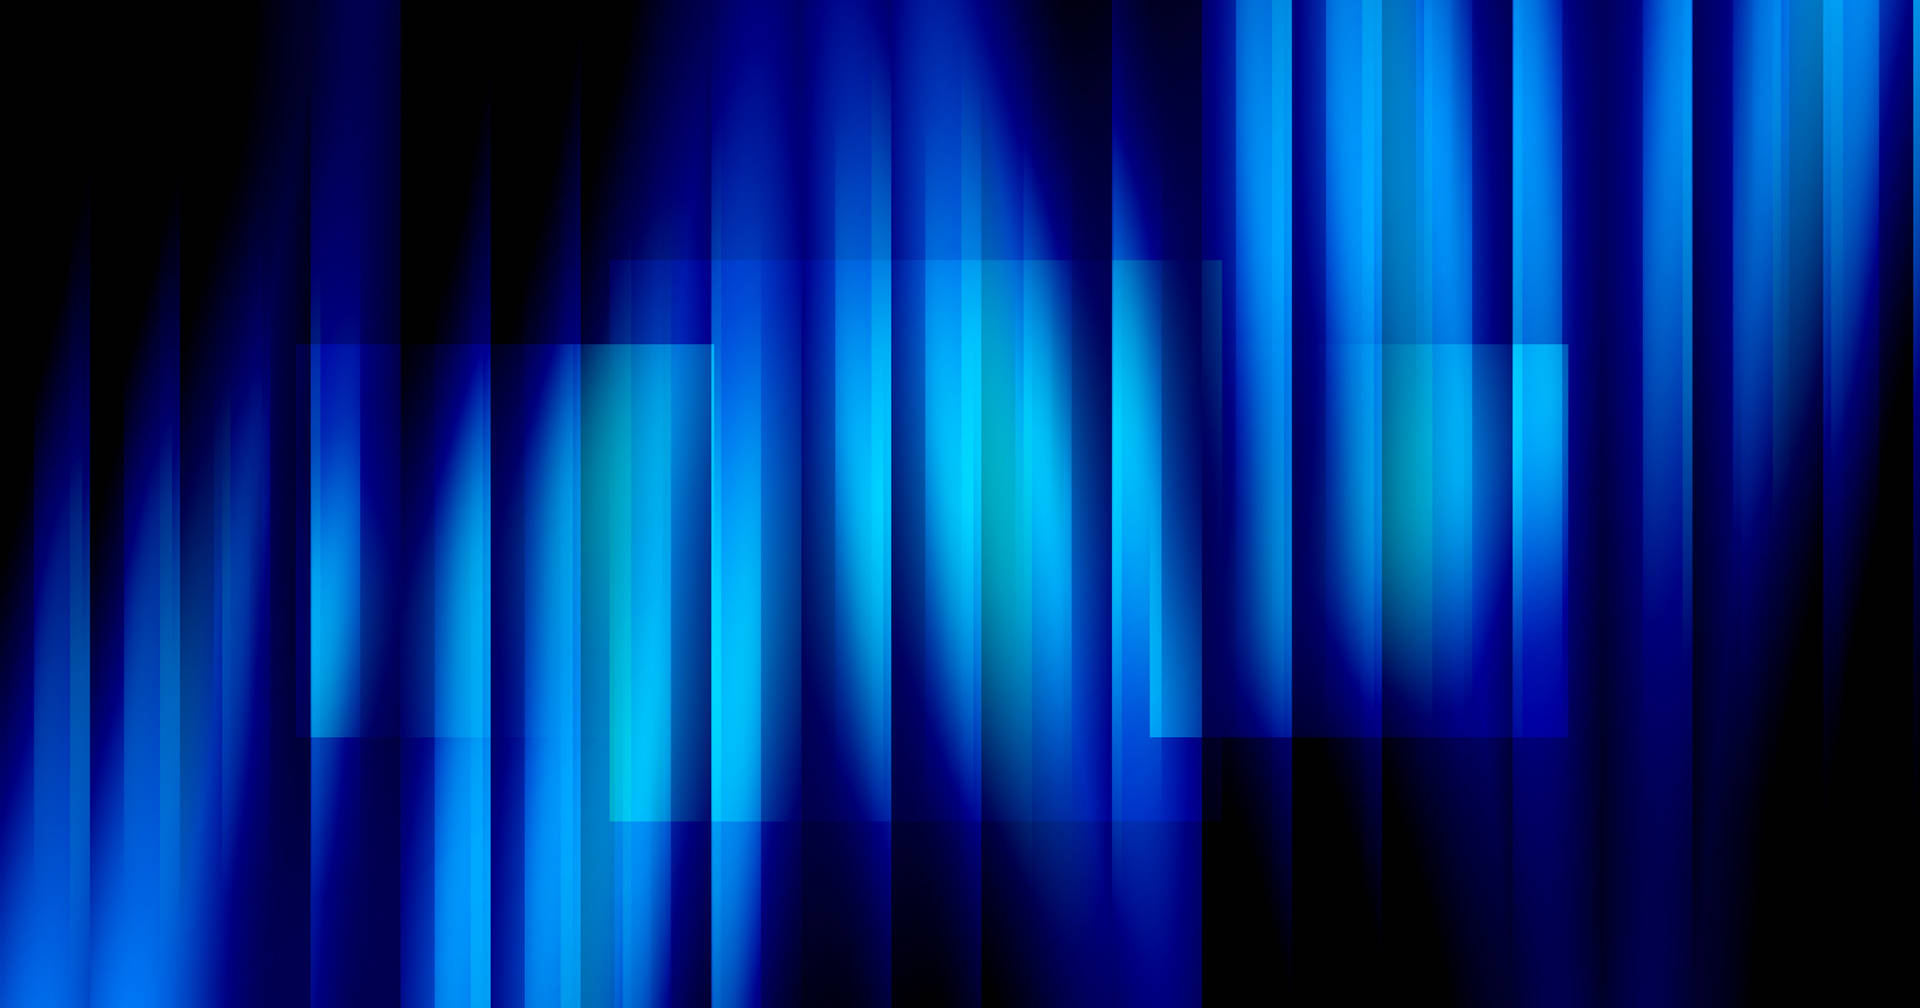 Dark Blue Aesthetic Vertical Strips Wallpaper